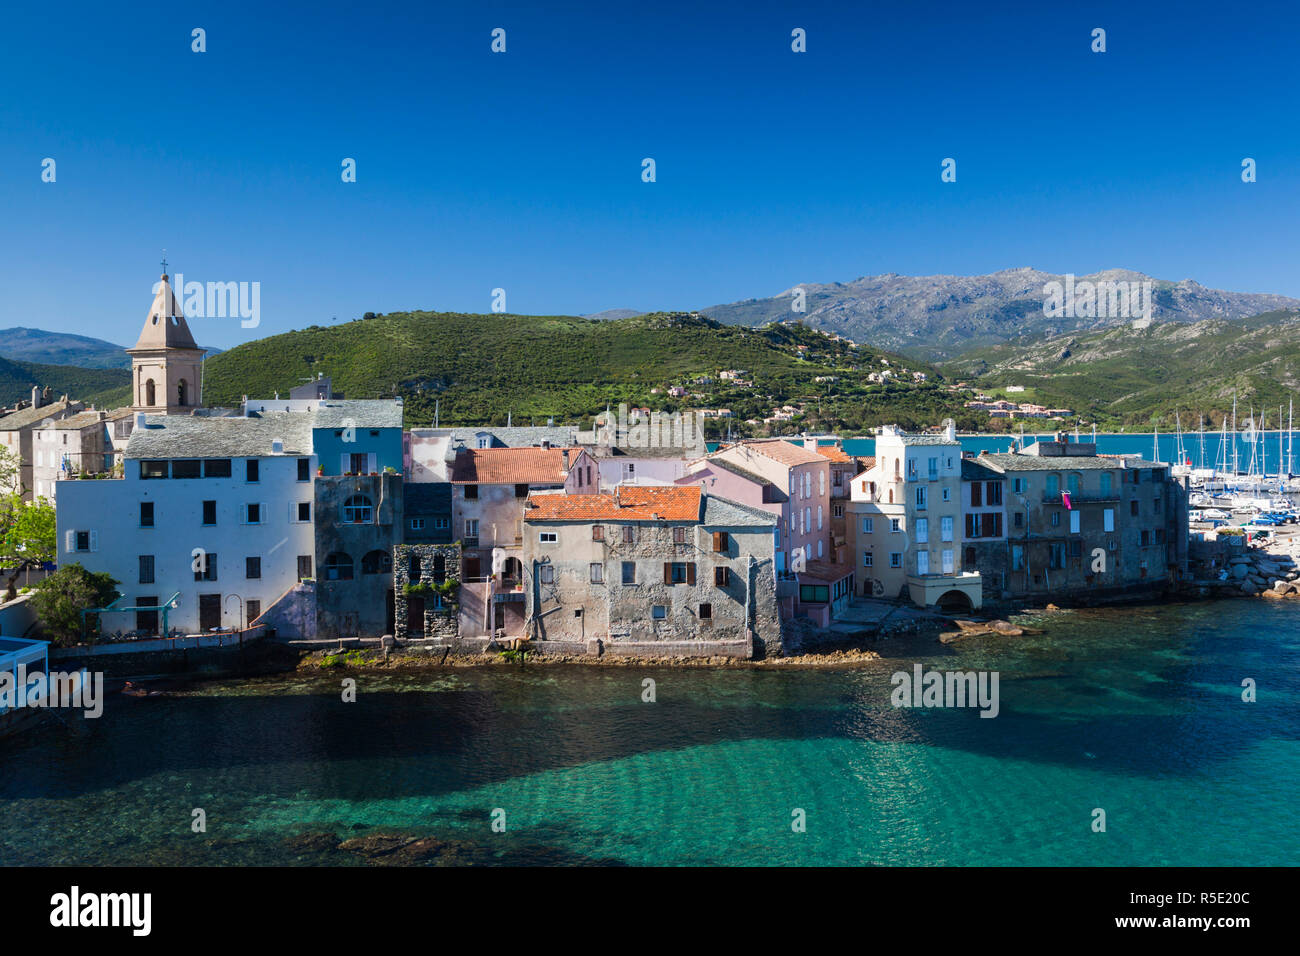 France, Corsica, Haute-Corse Department, Le Nebbio Region, St-Florent, port view Stock Photo